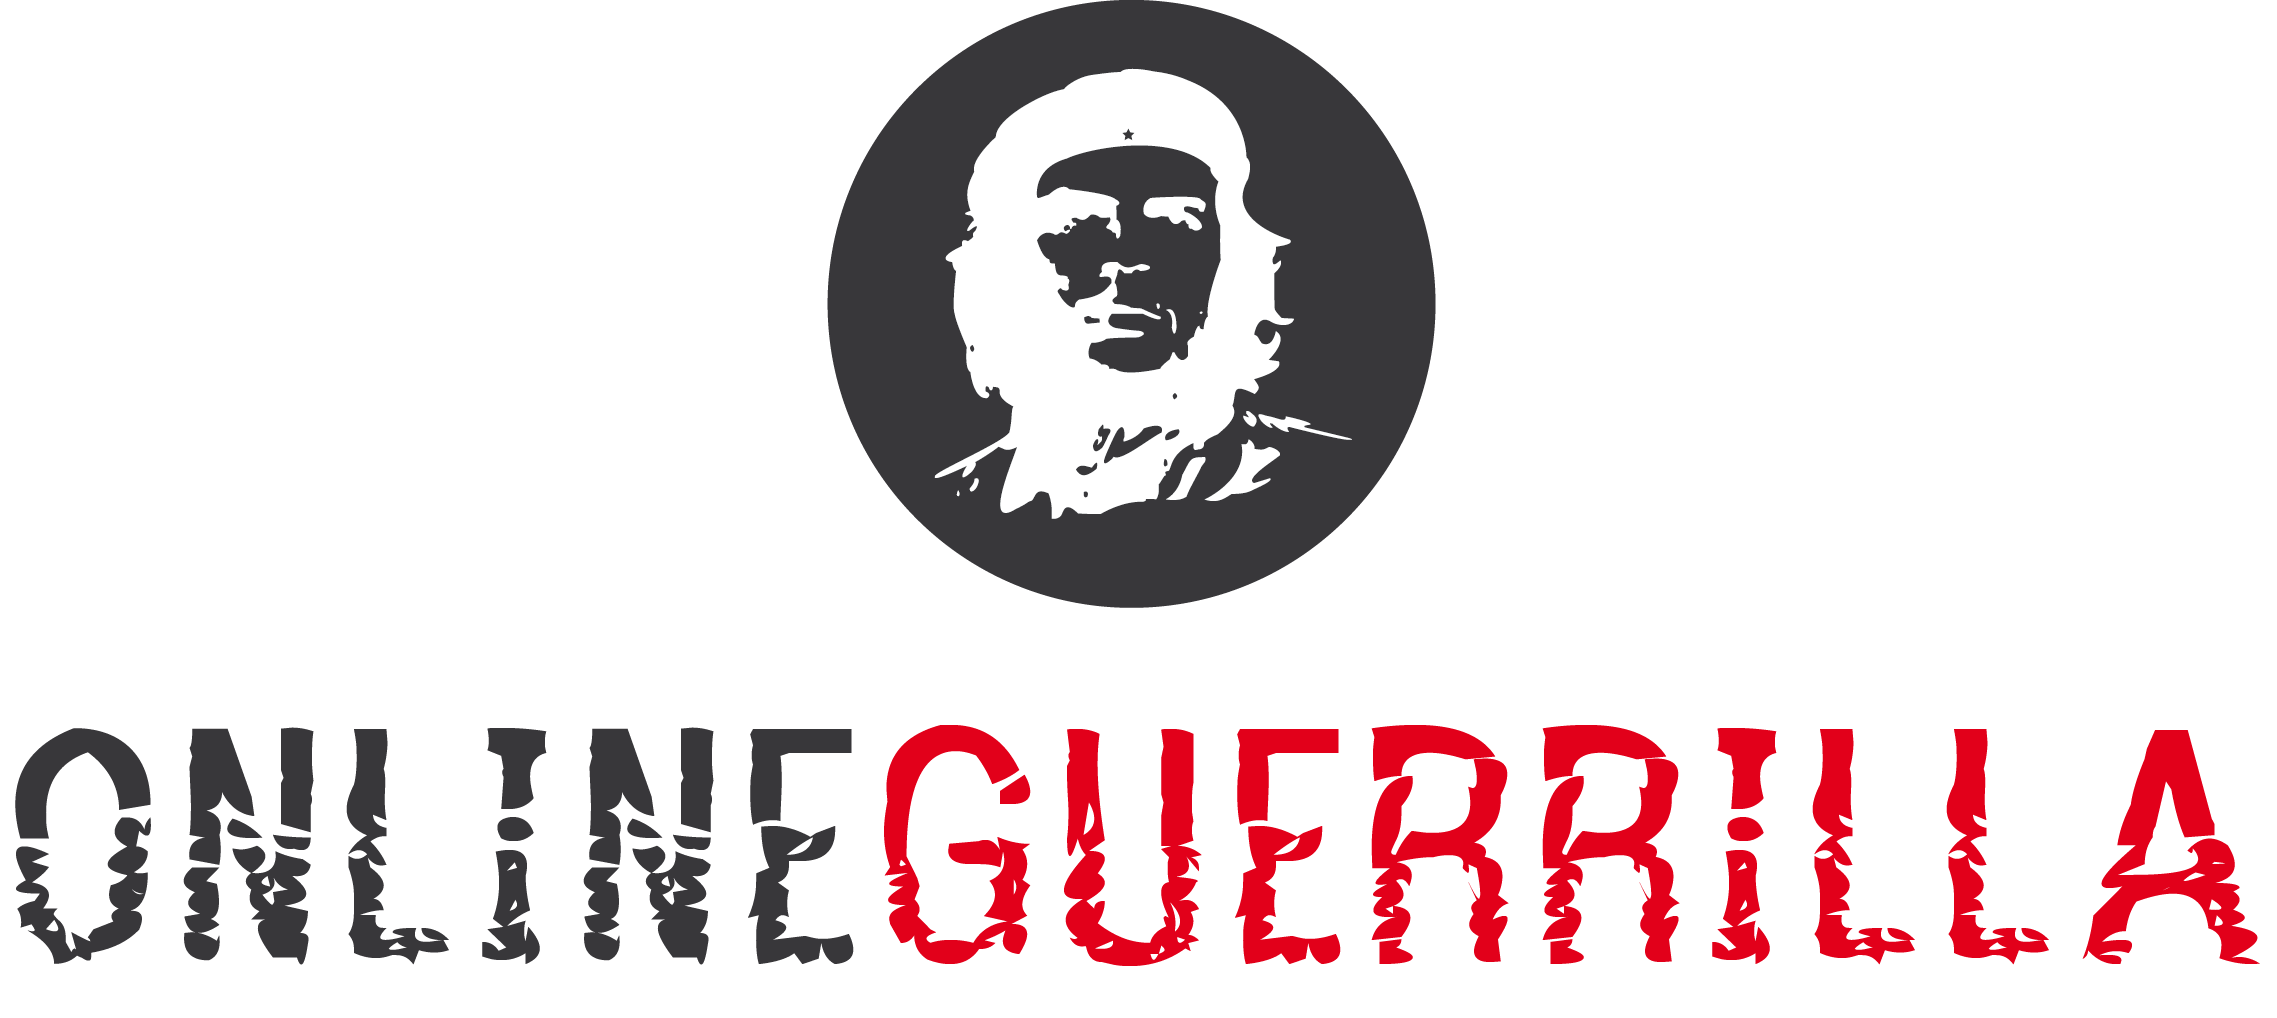 Online Guerrilla